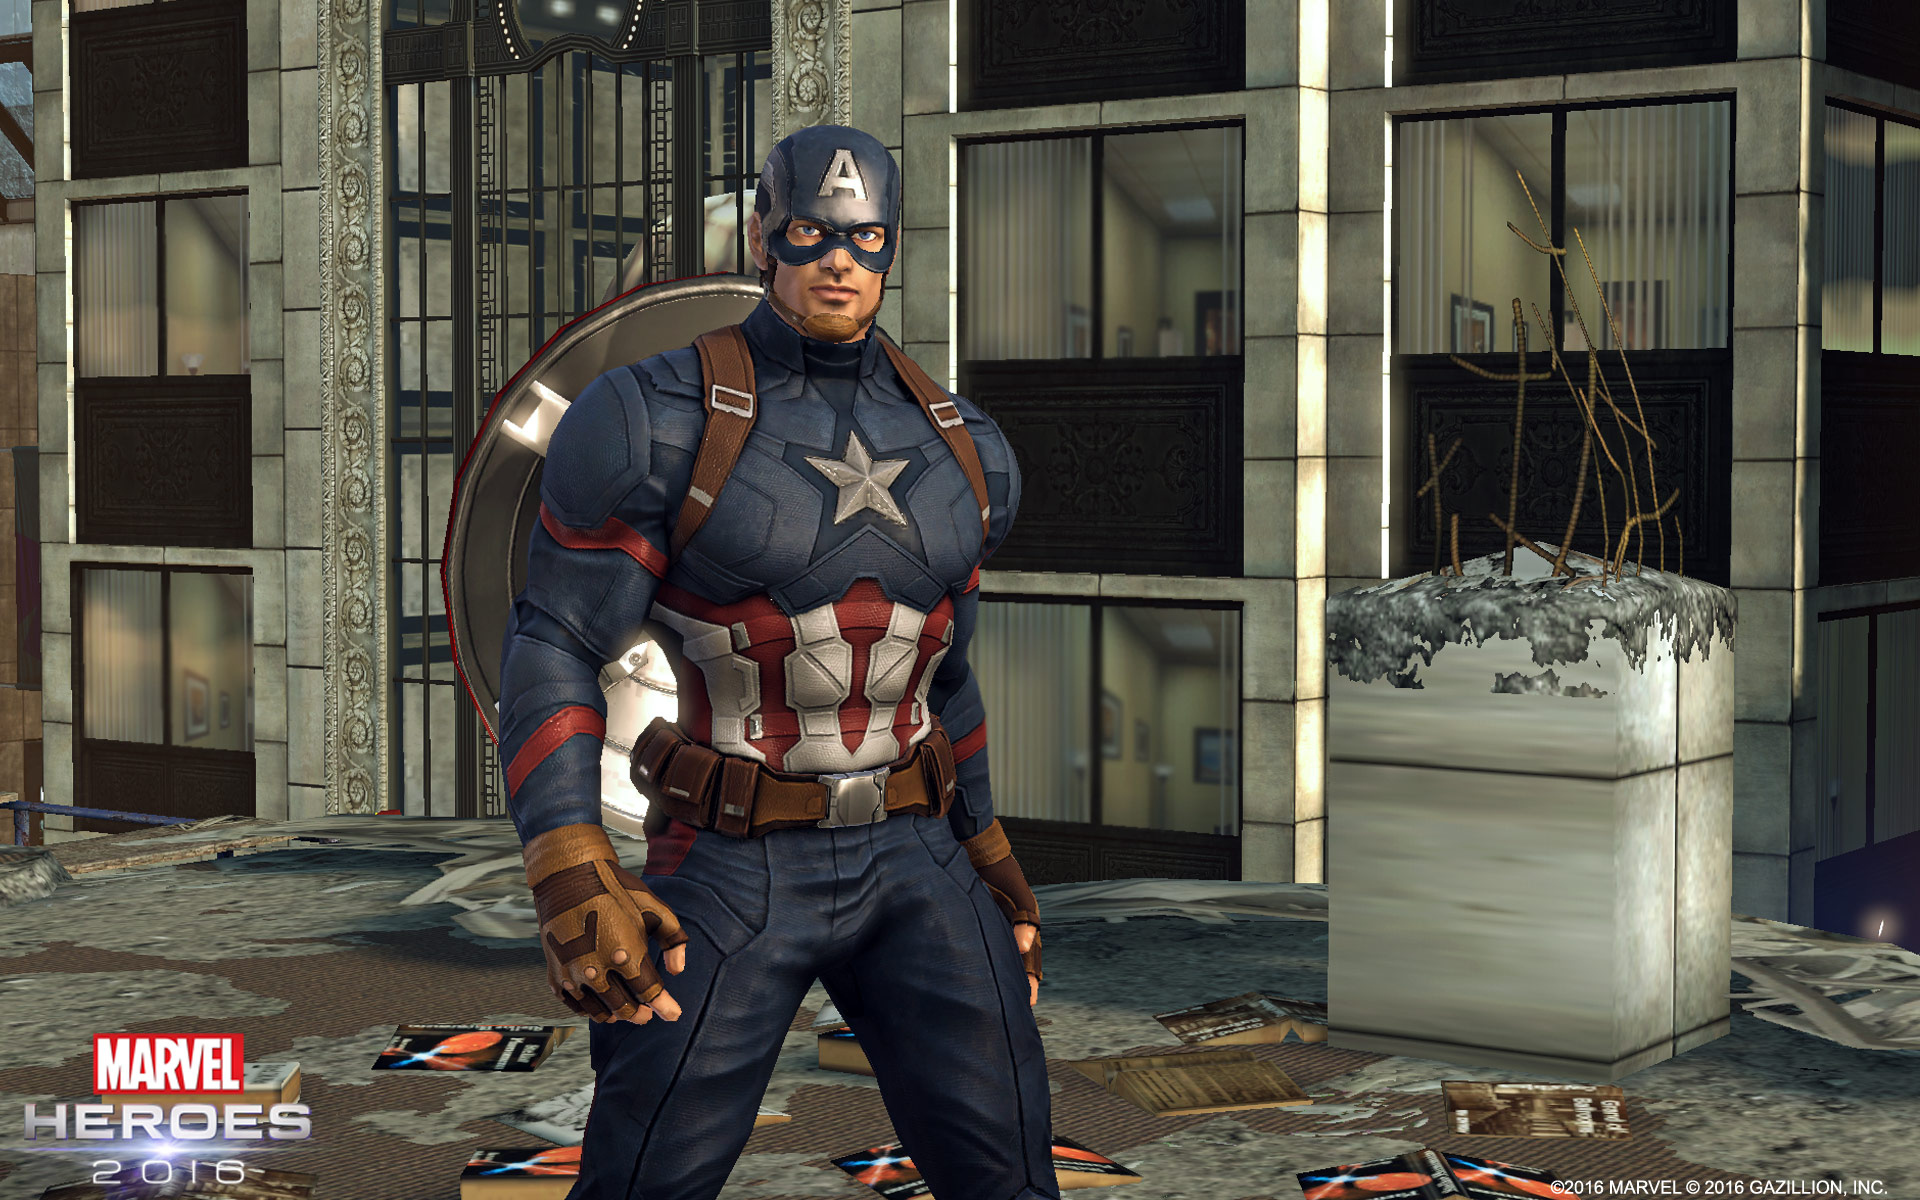 Marvel Heroes 2016 - Marvel's Captain America: Civil War Starter Pack screenshot